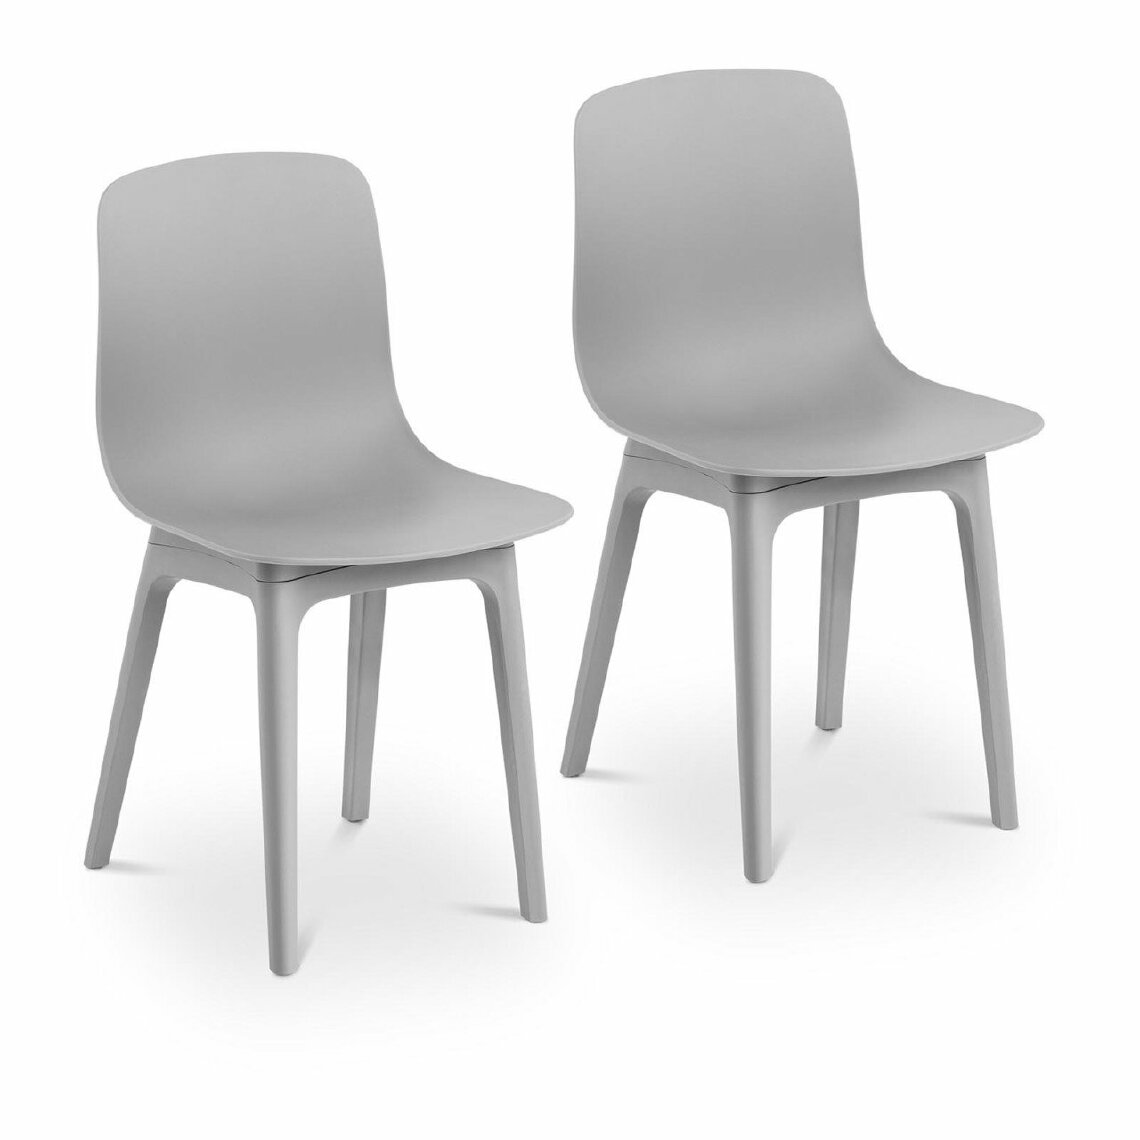 Helloshop26 - Lot de 2 chaises salon salle à manger 150 kg max surface d'assise de 44 x 41 cm coloris gris 14_0000873 - Chaises